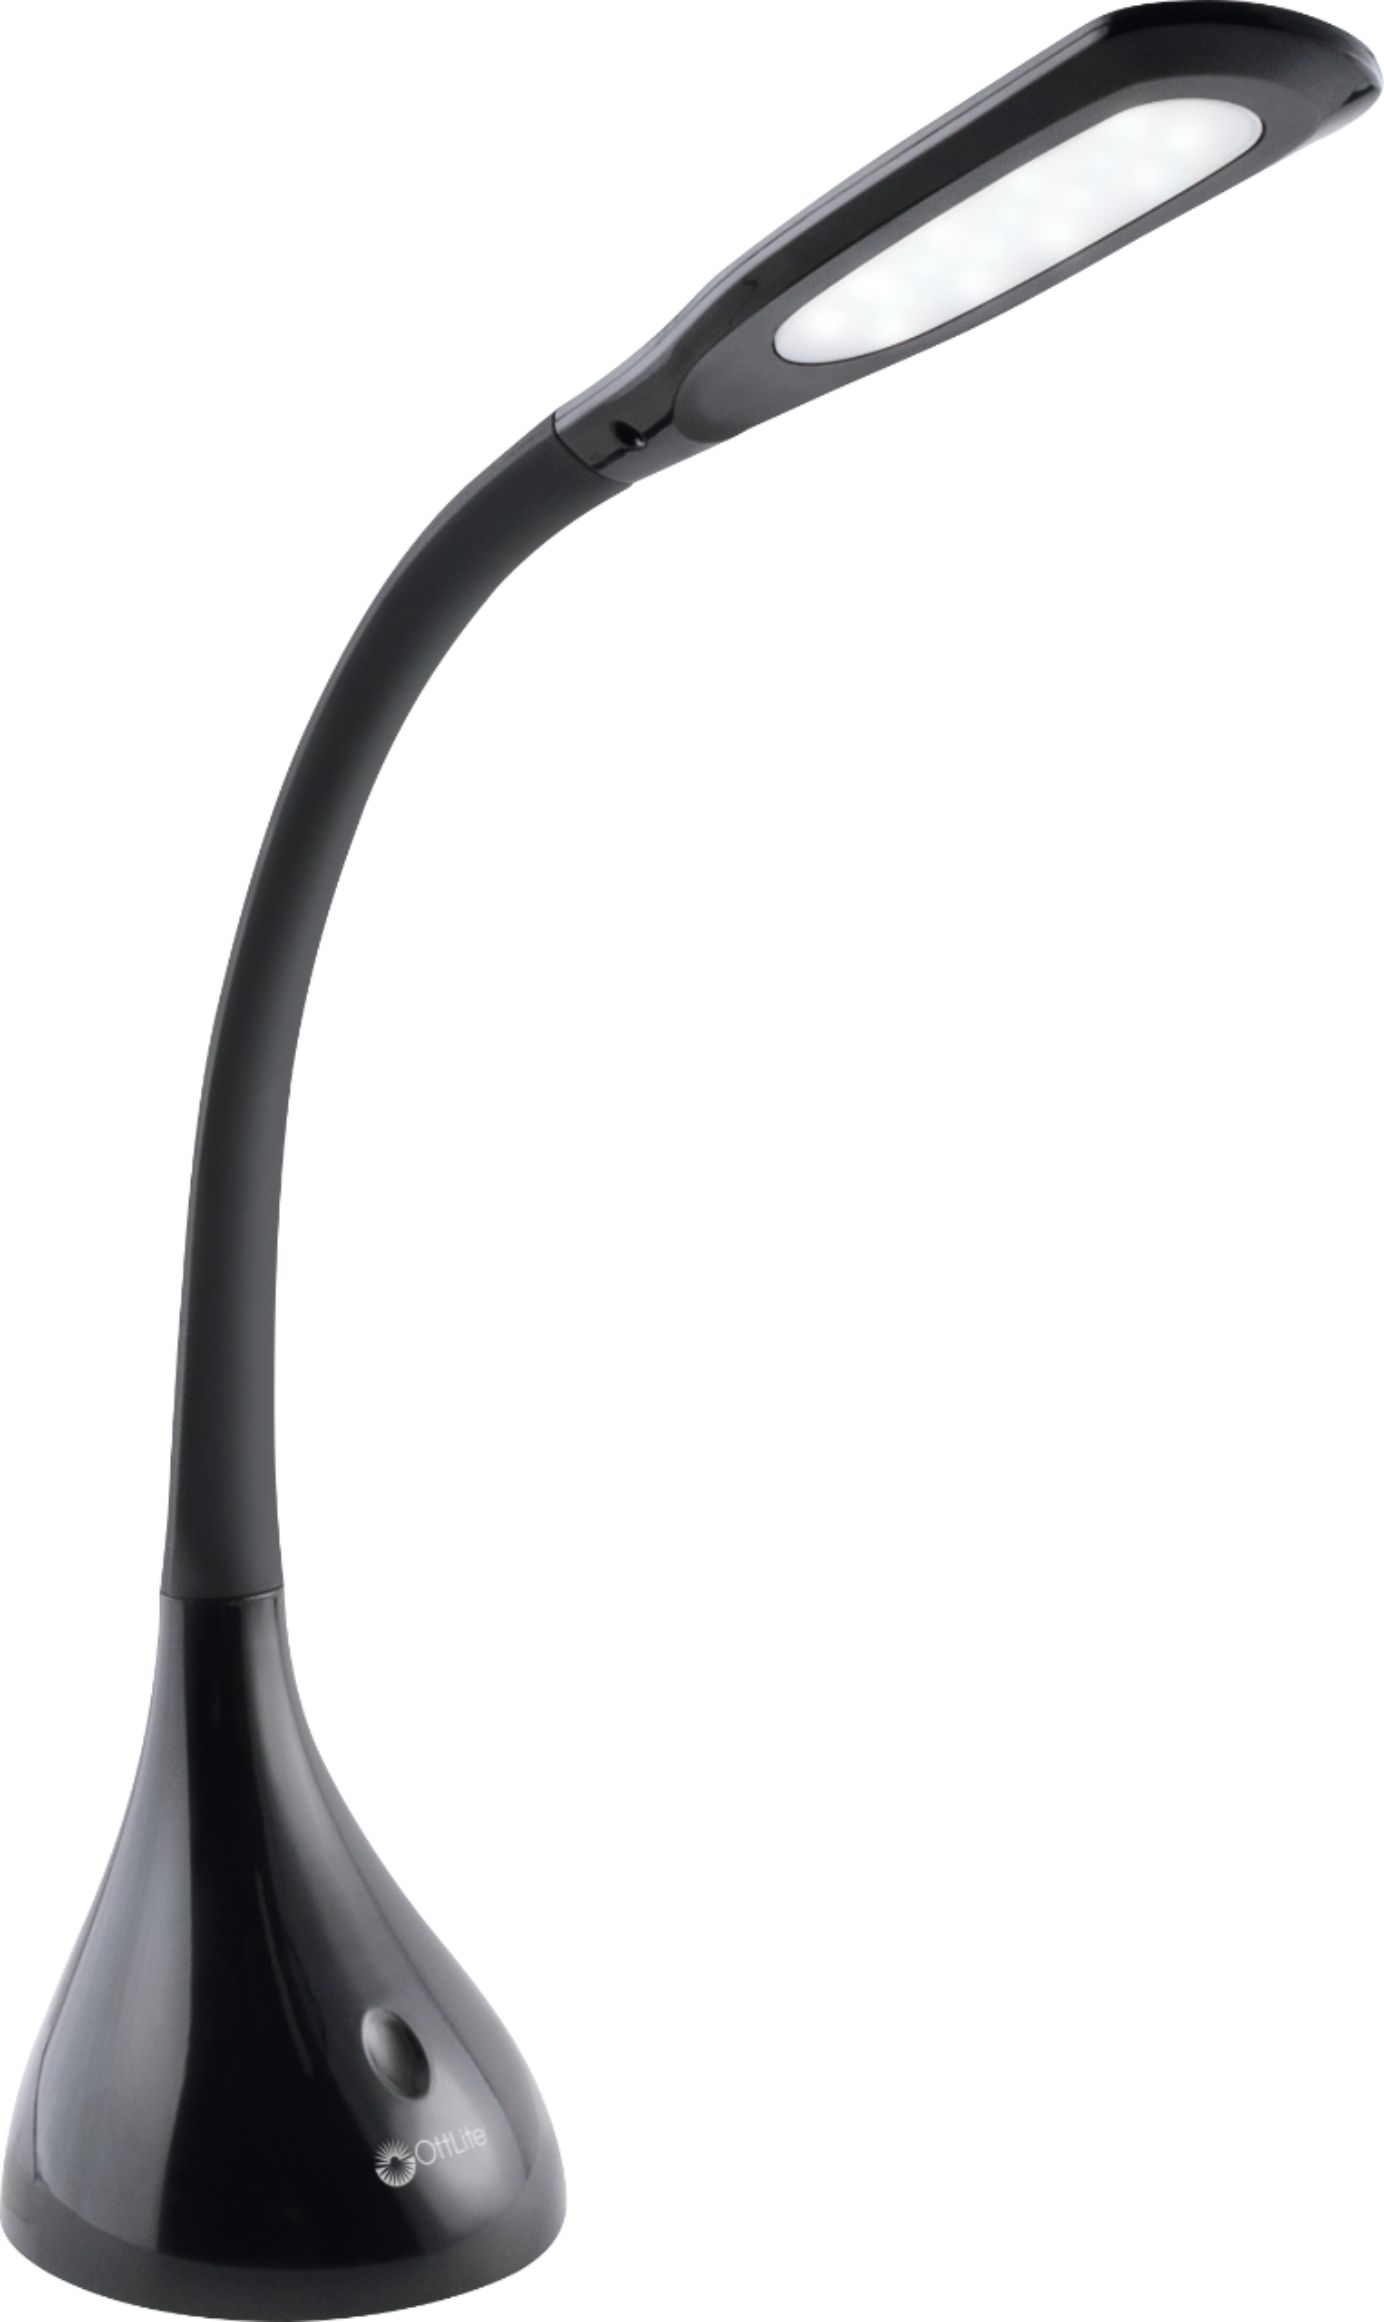 Ott*Lite Adjustable Telescoping Black Desk Lamp Model #CDO-003